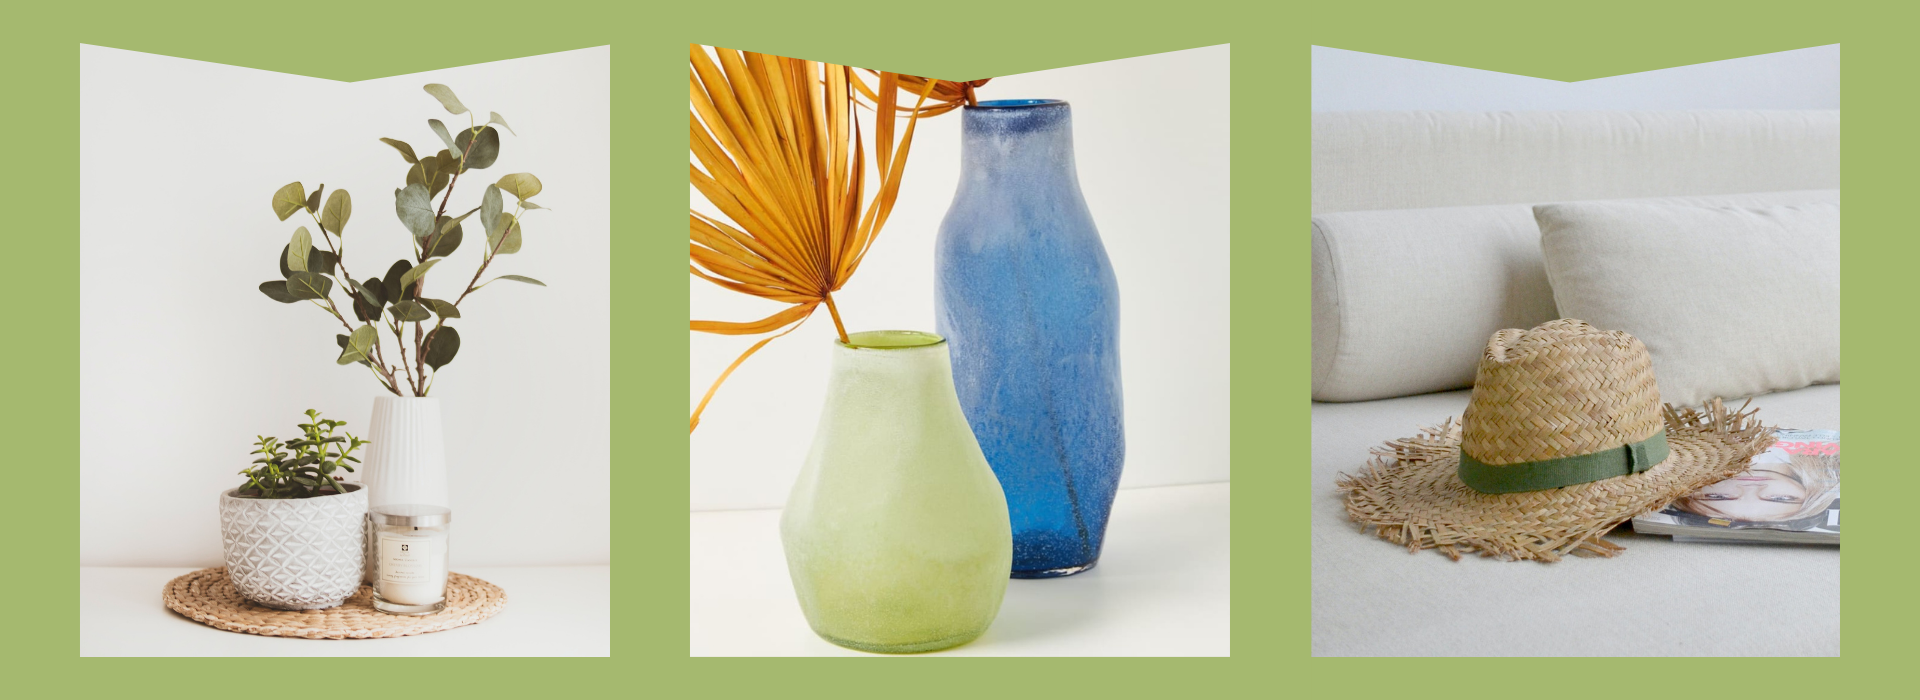 White vase, Blue & Green glass vases, straw sun hat